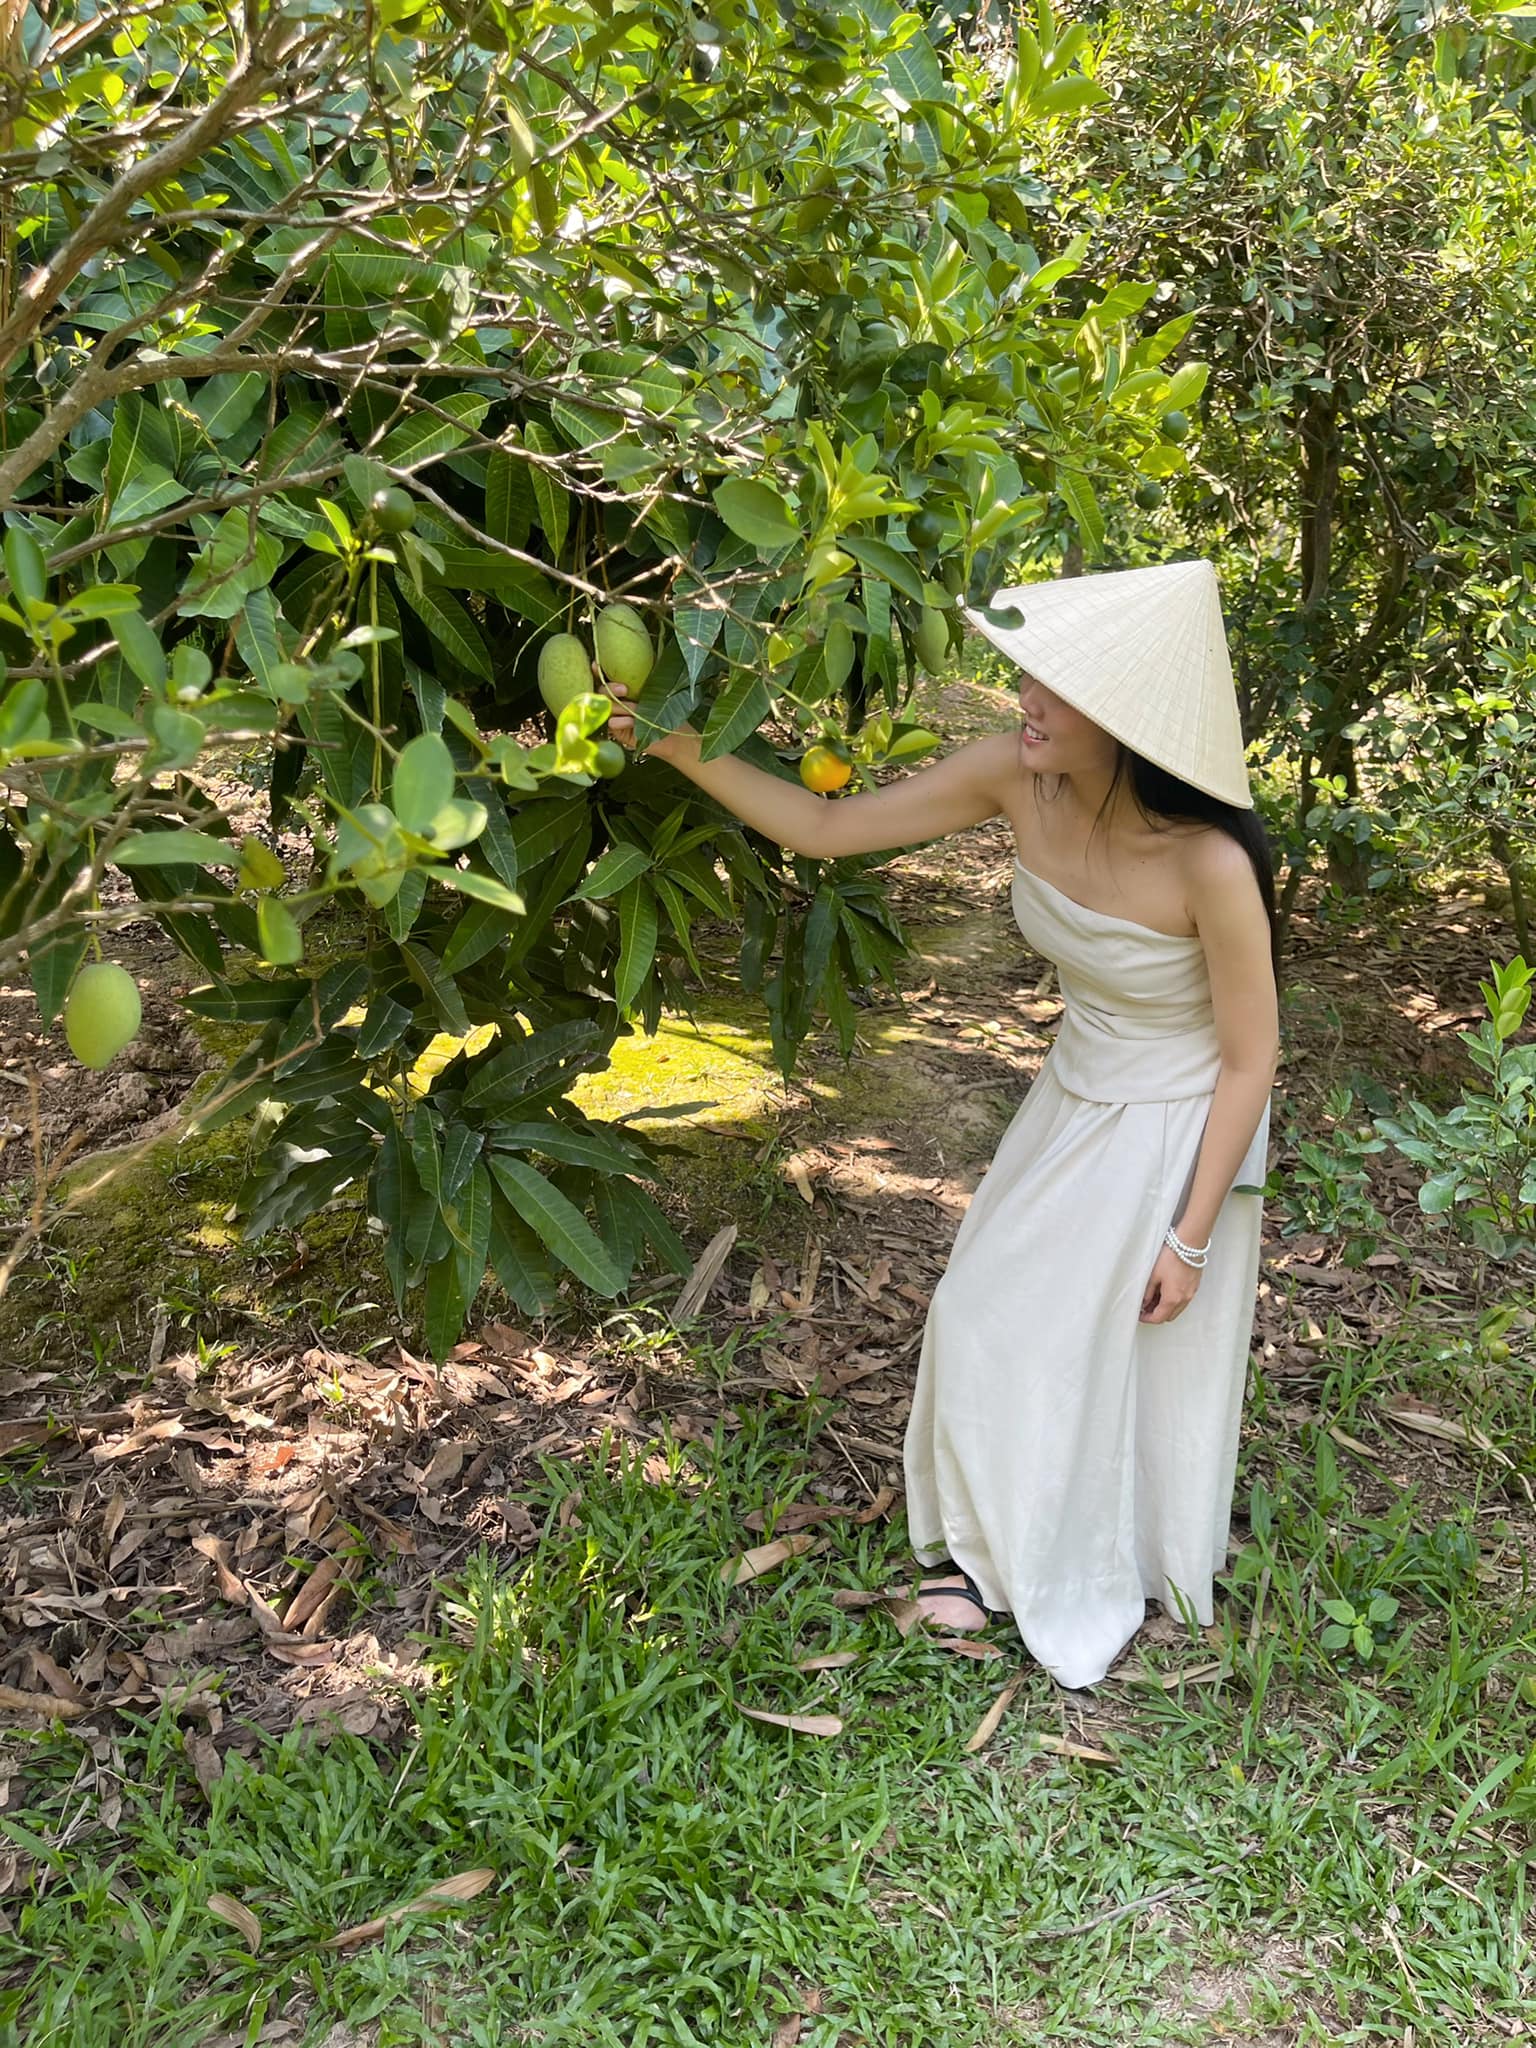 Lấy chồng hơn 25 tuổi, mỹ nhân nổi nhất Hoa hậu Việt Nam 2012 quanh quẩn làm vườn vẫn mặc đẹp - 30